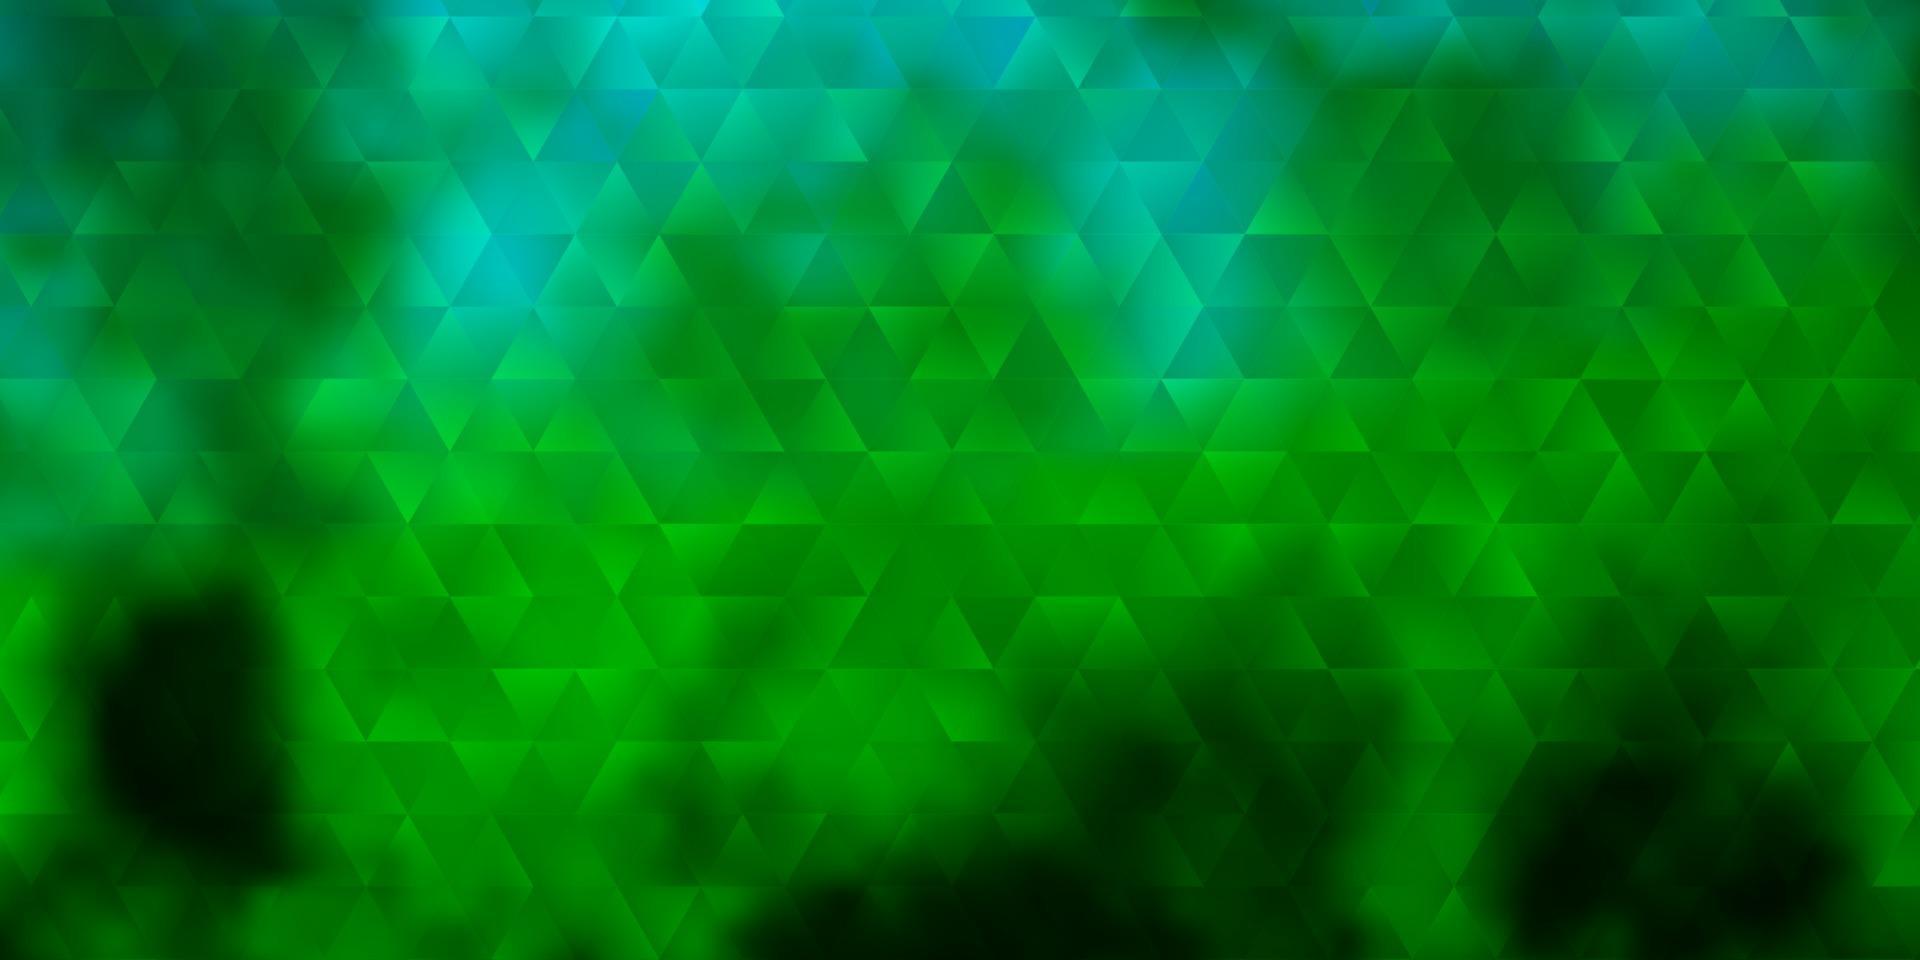 pano de fundo azul claro, verde do vetor com linhas, triângulos.